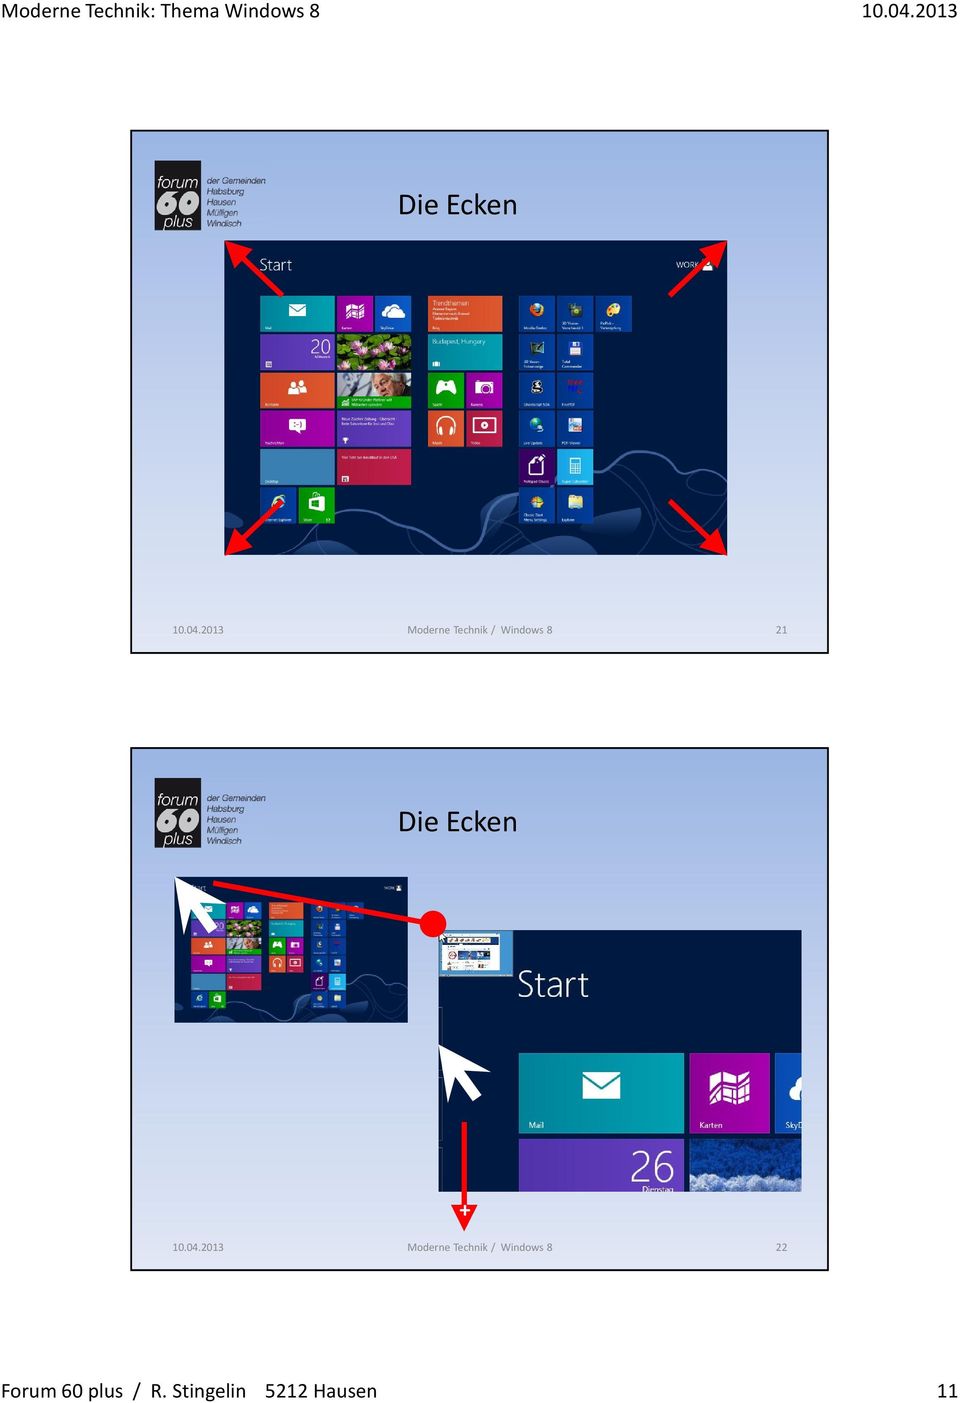 Die Ecken + Moderne Technik / Windows 8